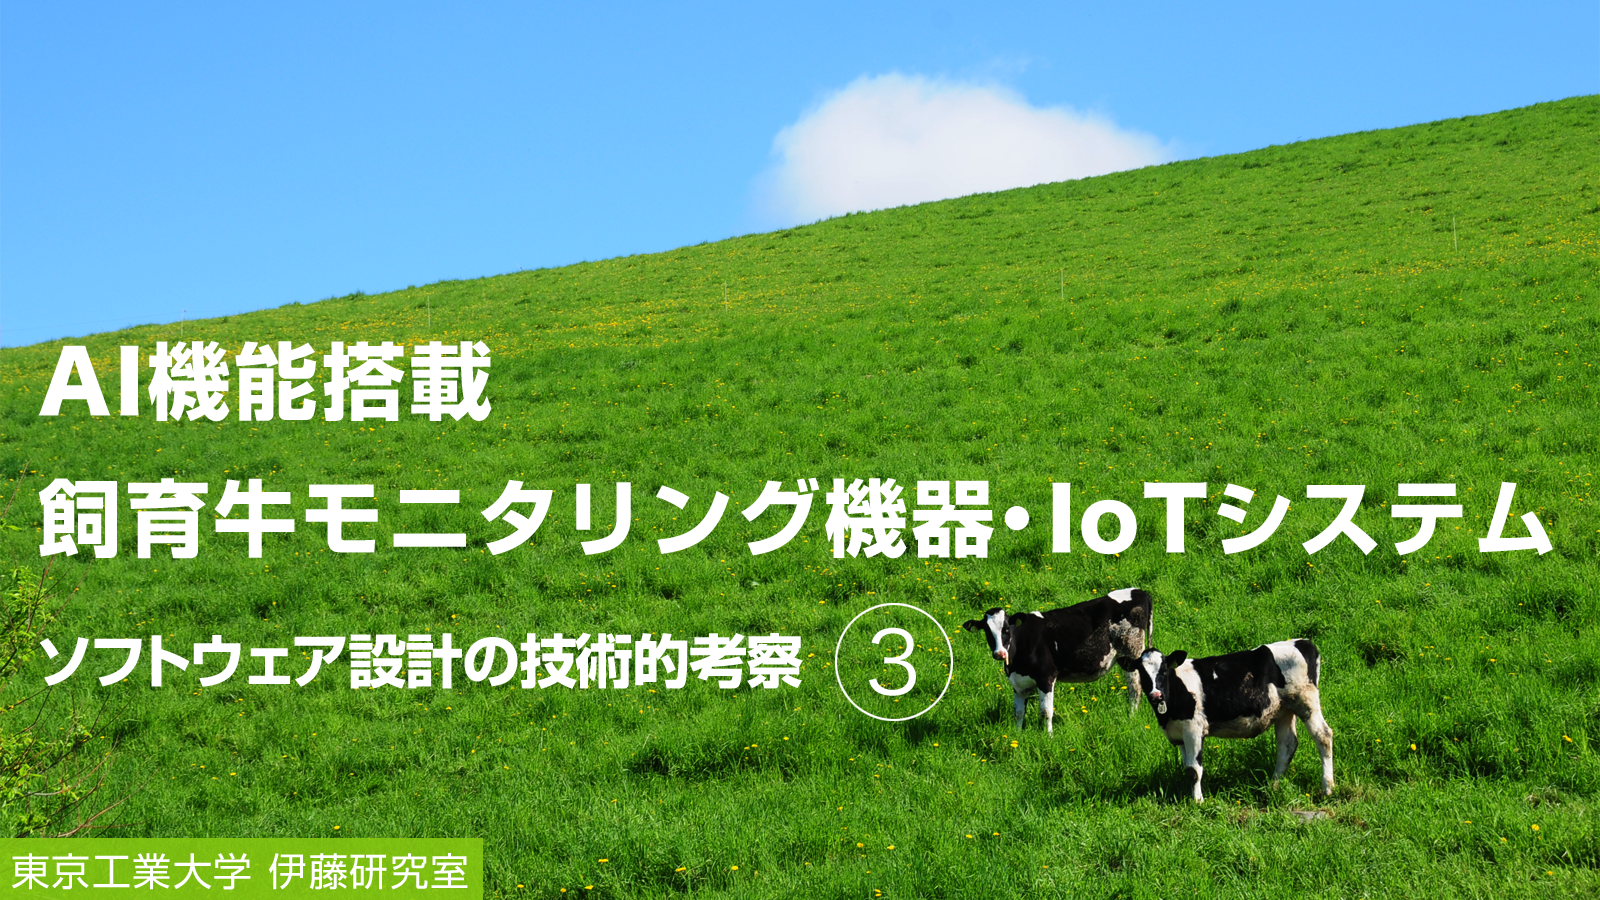 AI機能搭載 飼育牛モニタリング機器・IoTシステム 本研究のソフトウェア設計の技術的考察（3）
～IoTデバイスのソフトウェア構造について～